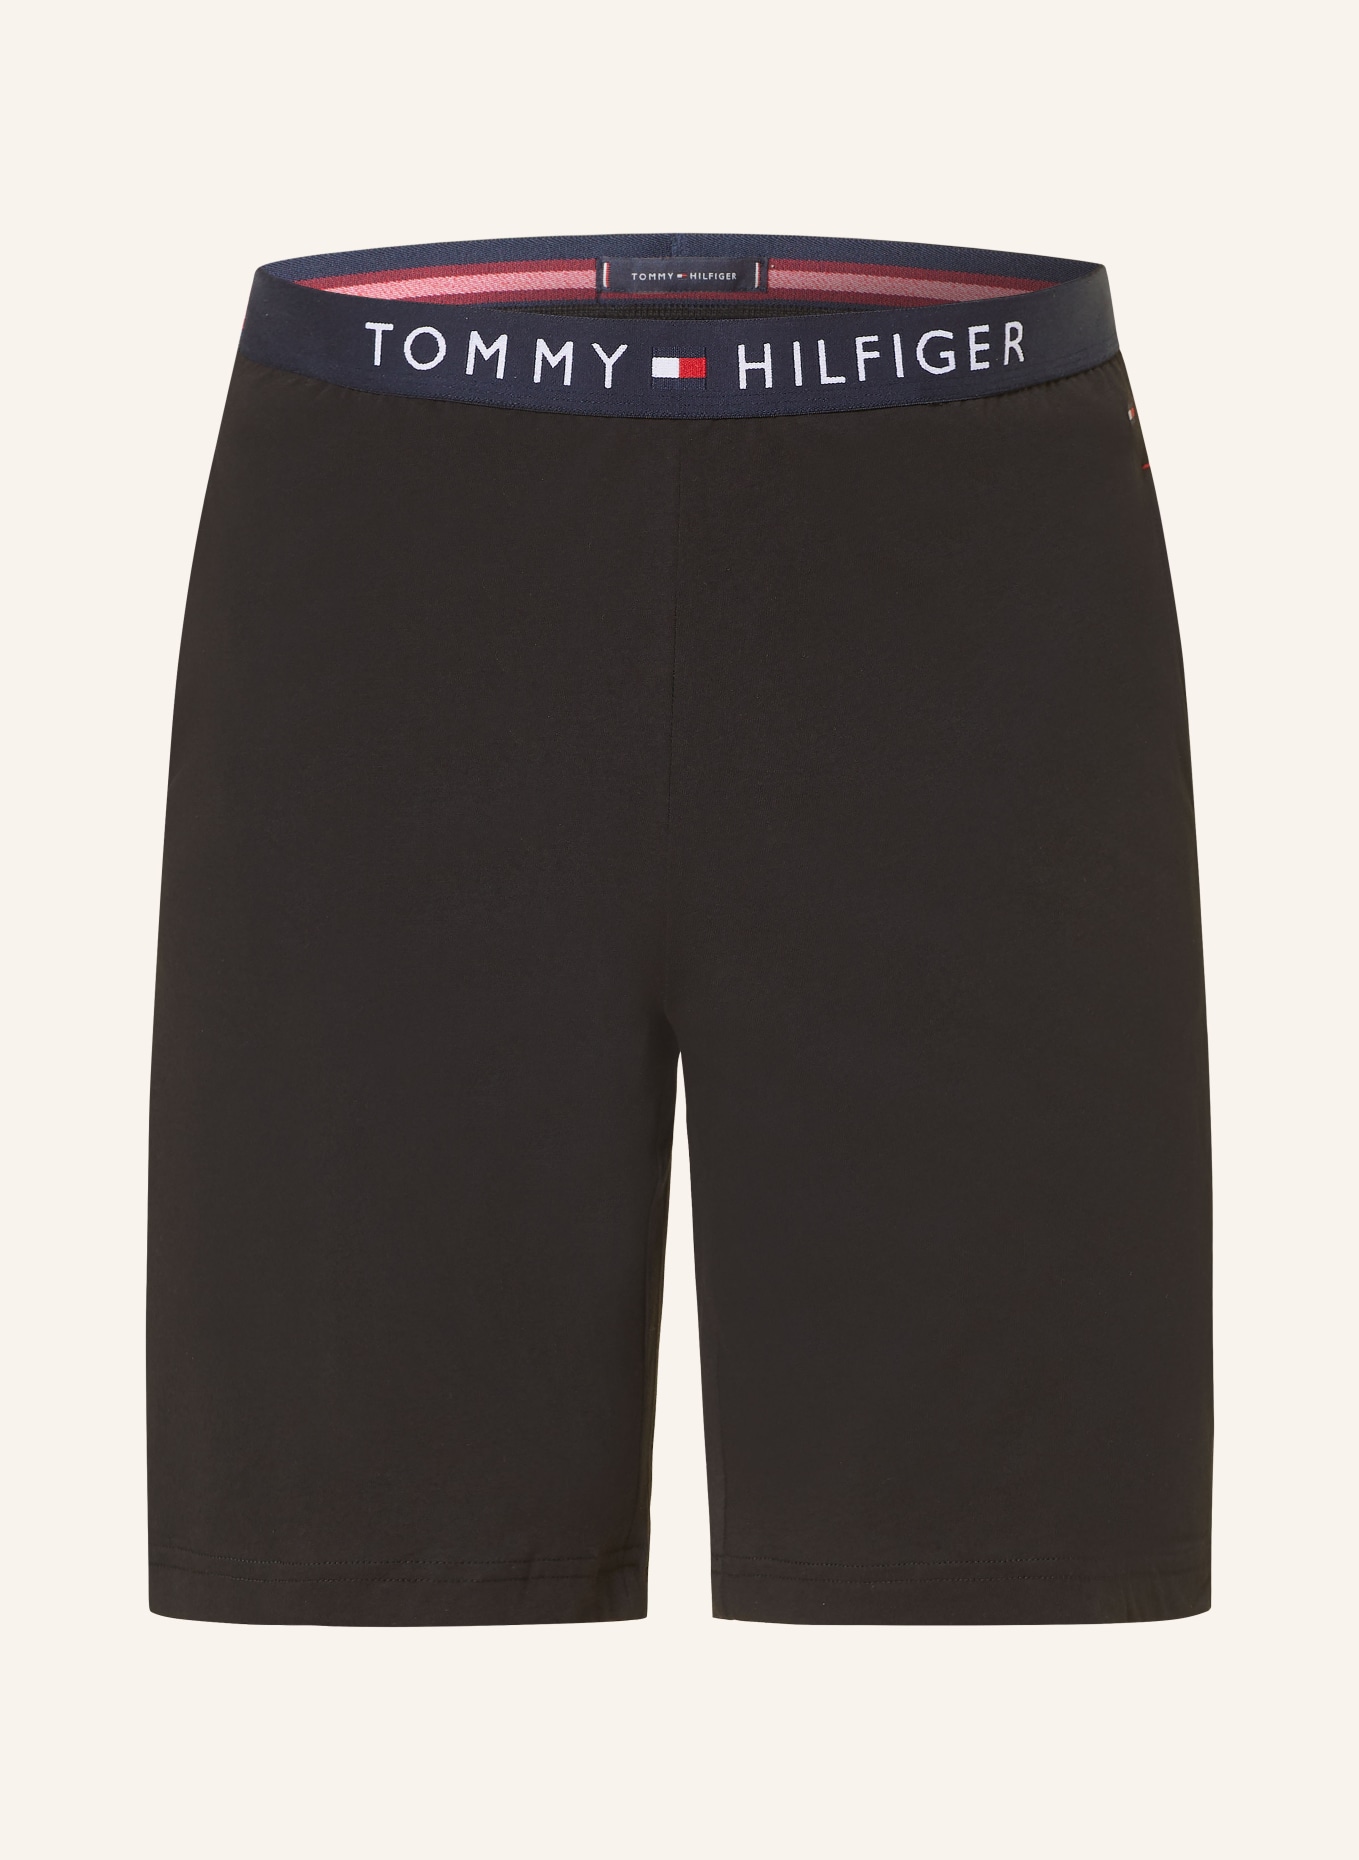 TOMMY HILFIGER Pajama shorts, Color: BLACK (Image 1)